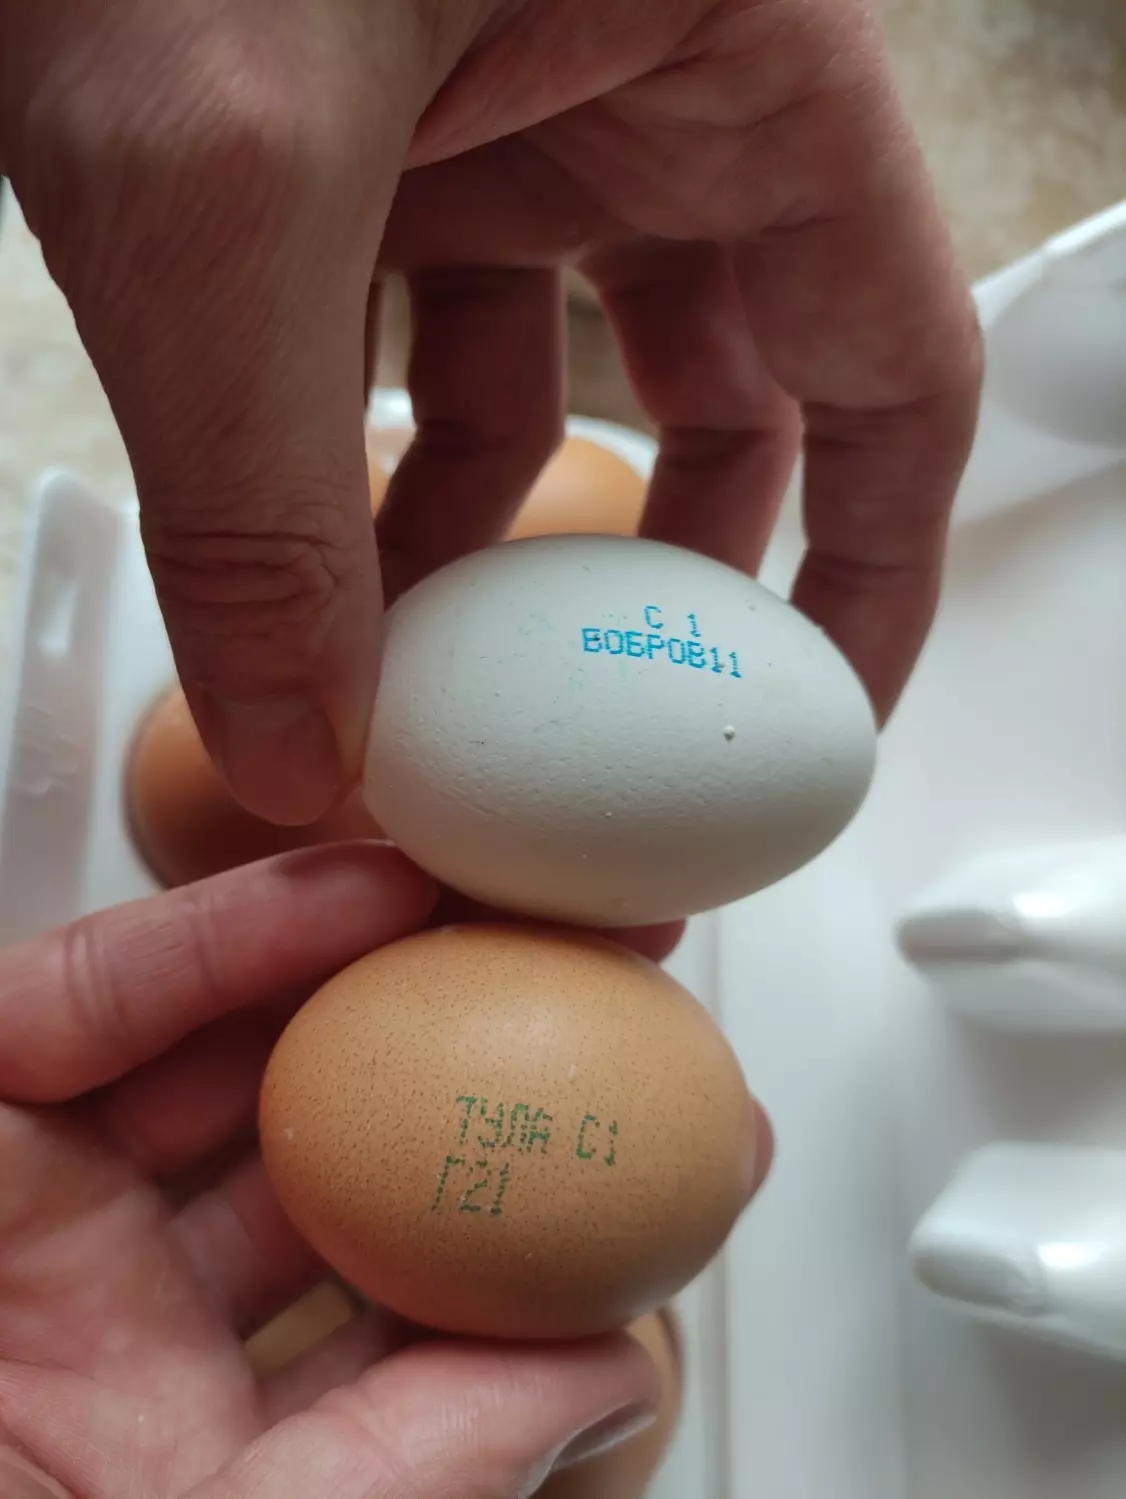 Сравнение размера куриных яиц категории С1 от разных производителей.